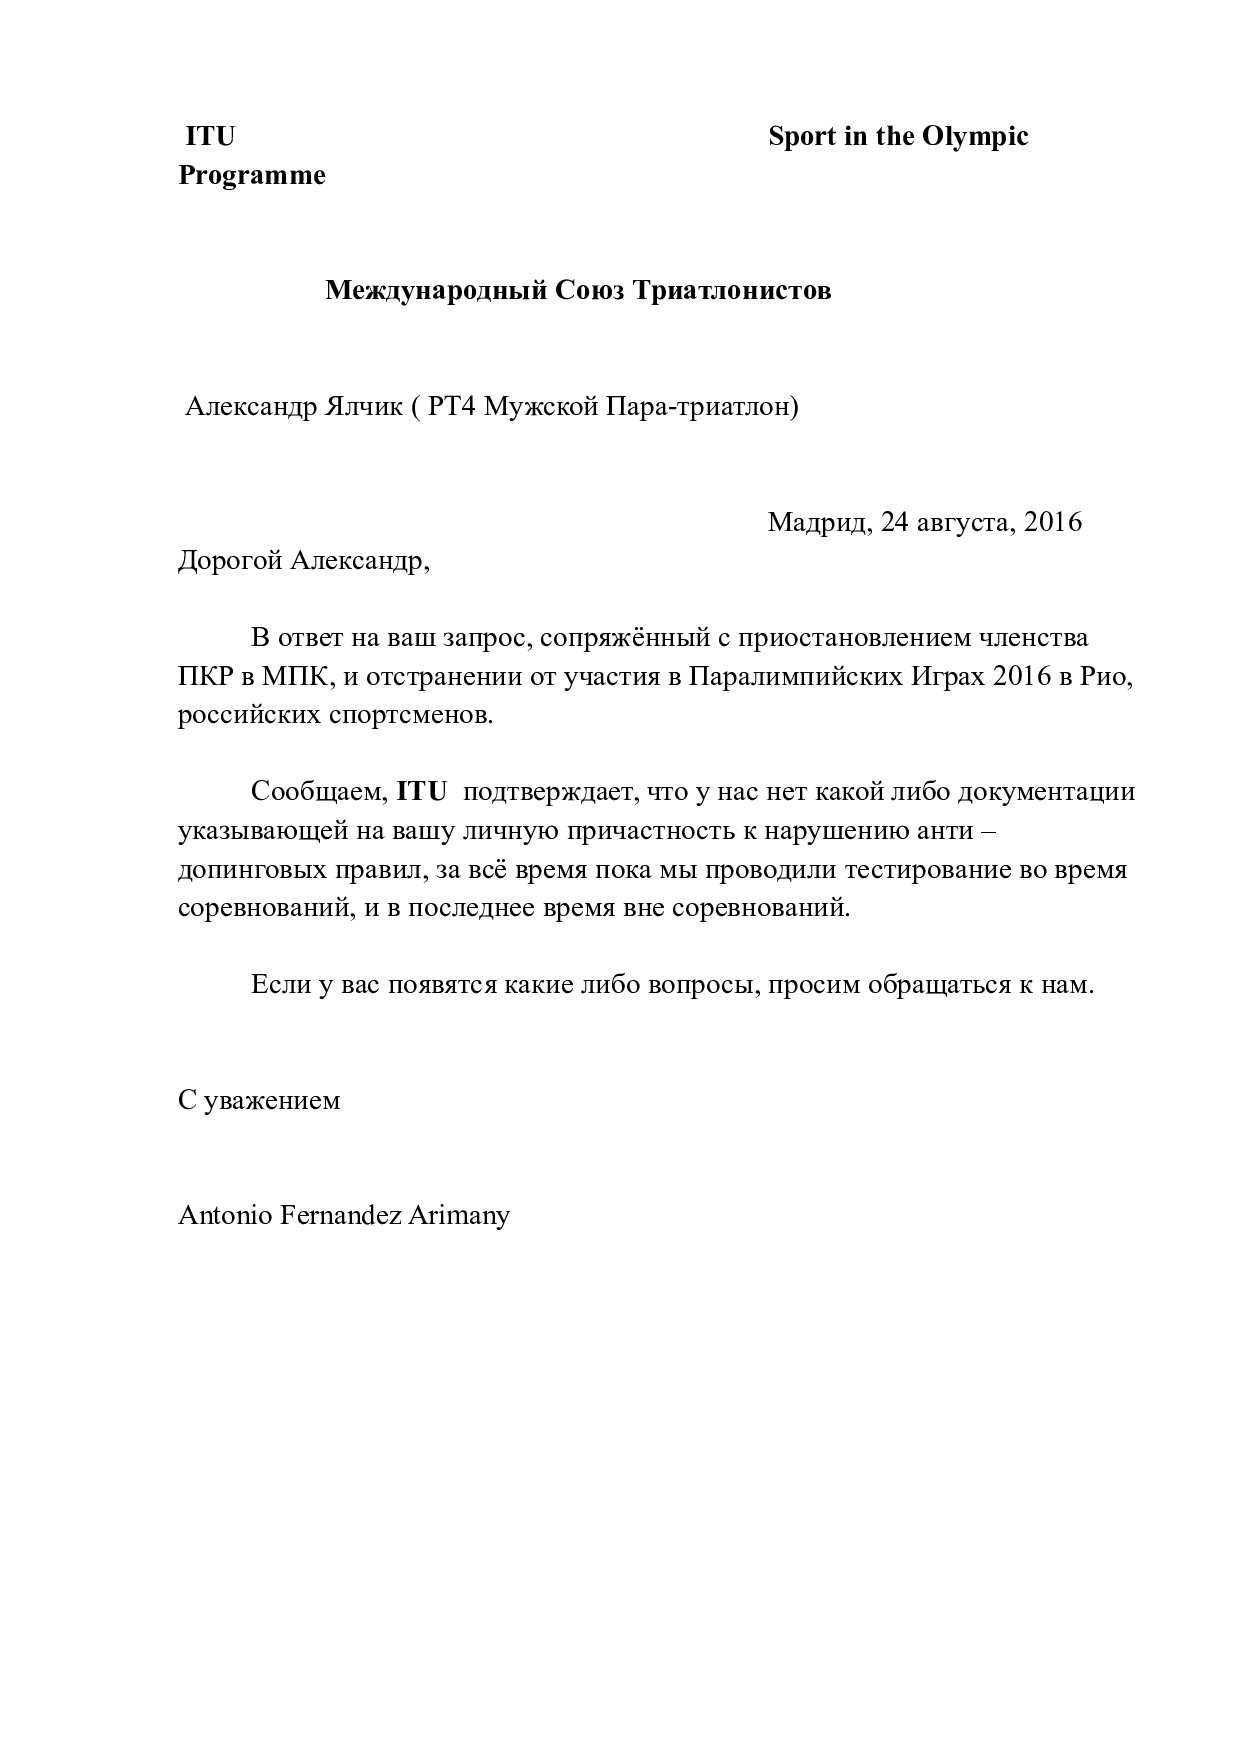 Российские паратриатлонисты получили письмо от Международного союза триатлонистов о личной непричастности к нарушениям международных анти-допинговых правил